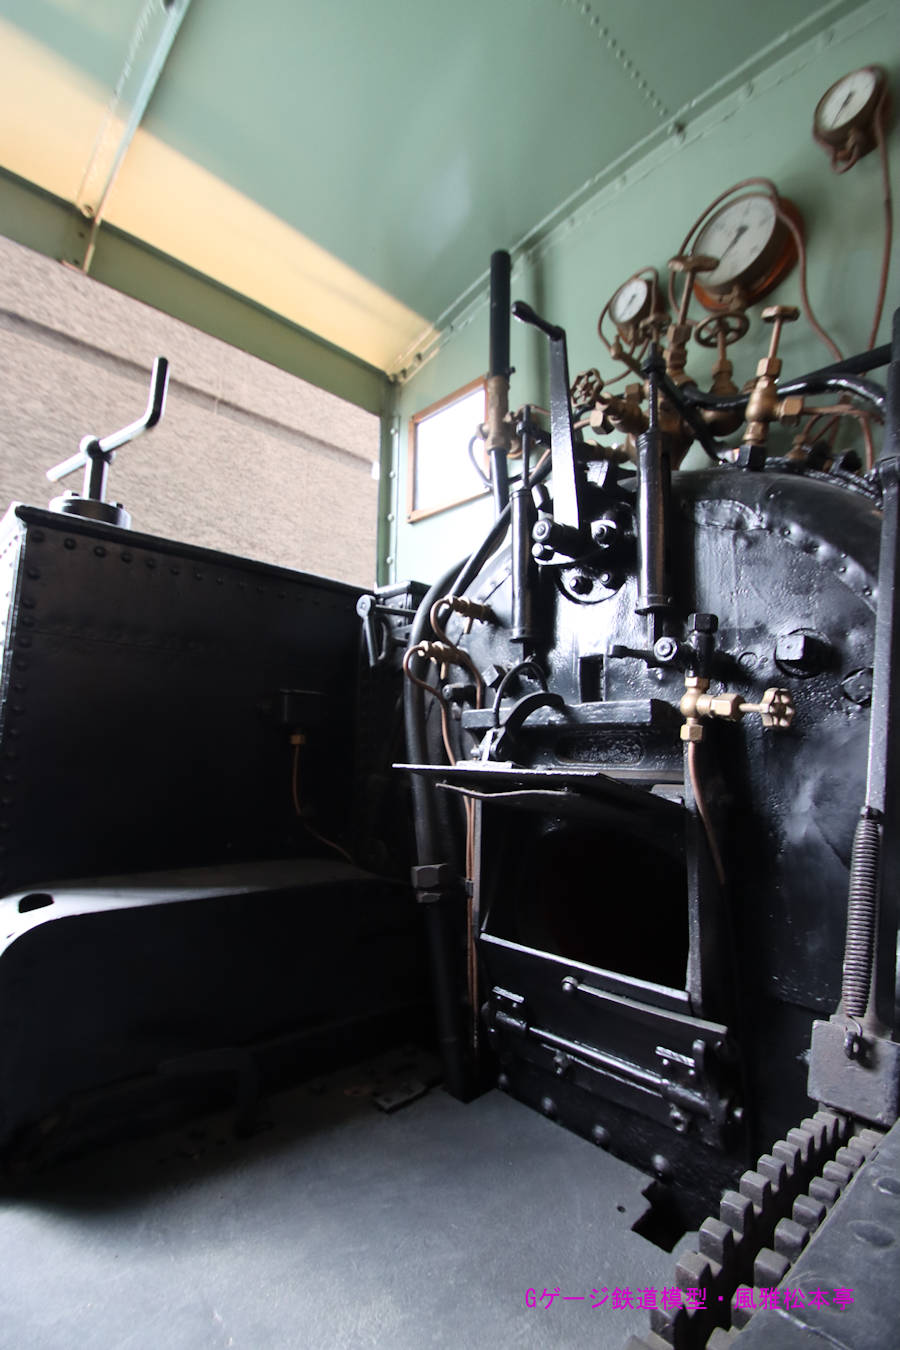 ヨークシャー・エンジン製の国鉄110型(3号機関車)の運転台内部。2020年(令和2年)9月、旧横ギャラリー(きゅうよこぎゃらりー：神奈川県横浜市中区)にて撮影。